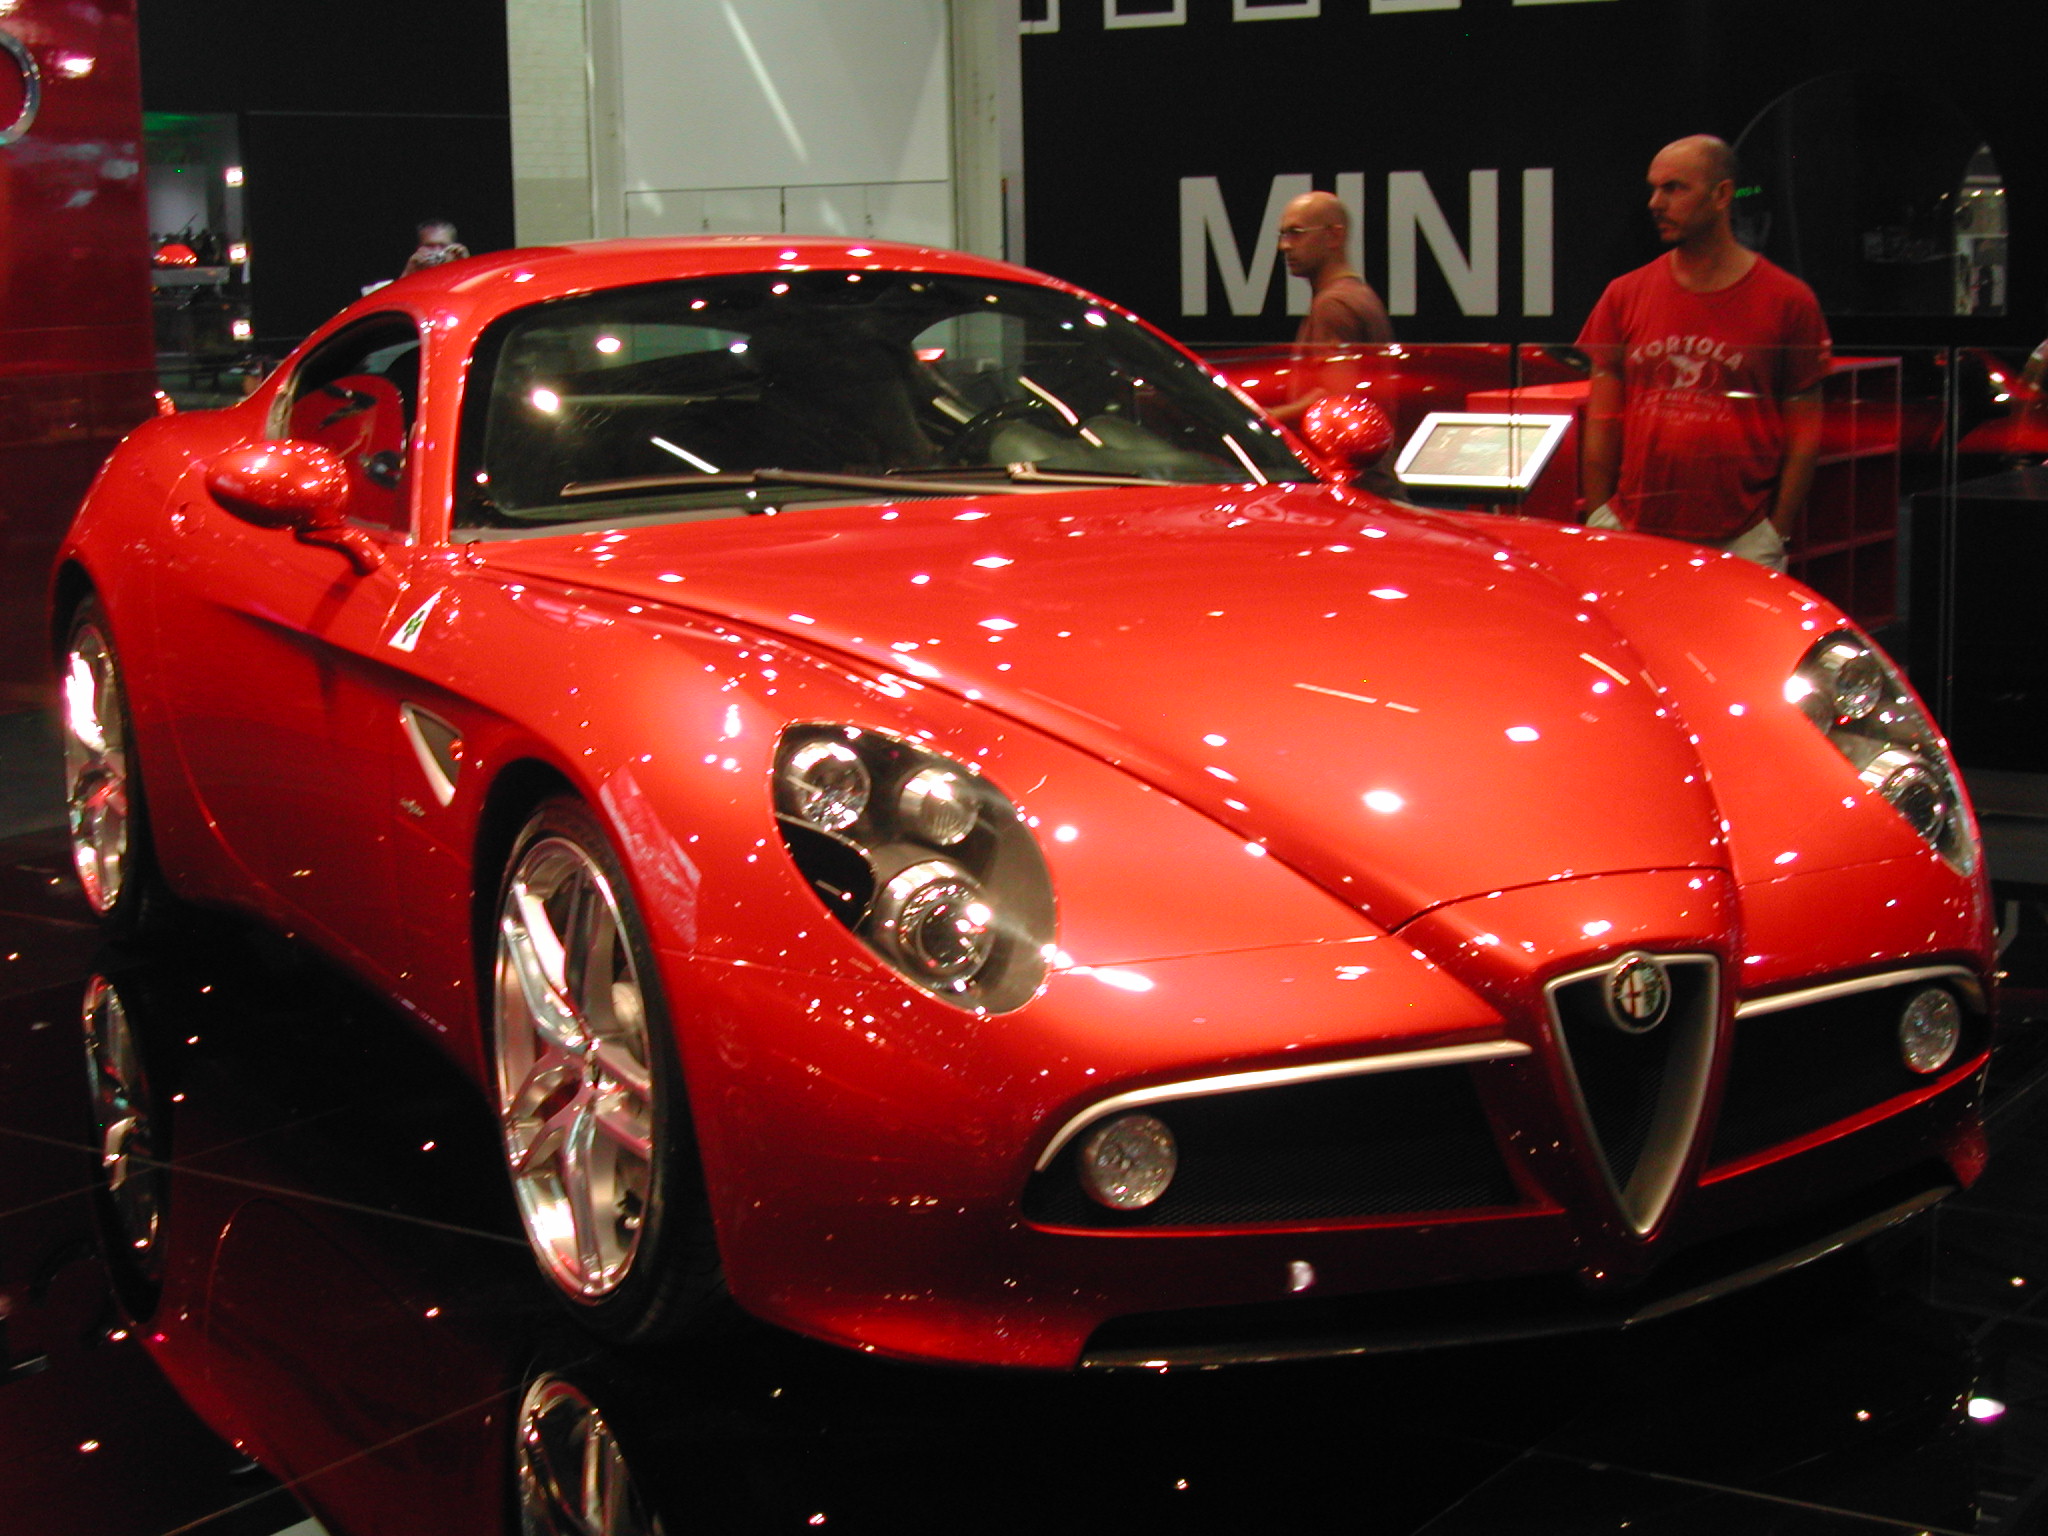 The back of the Alfa Romeo